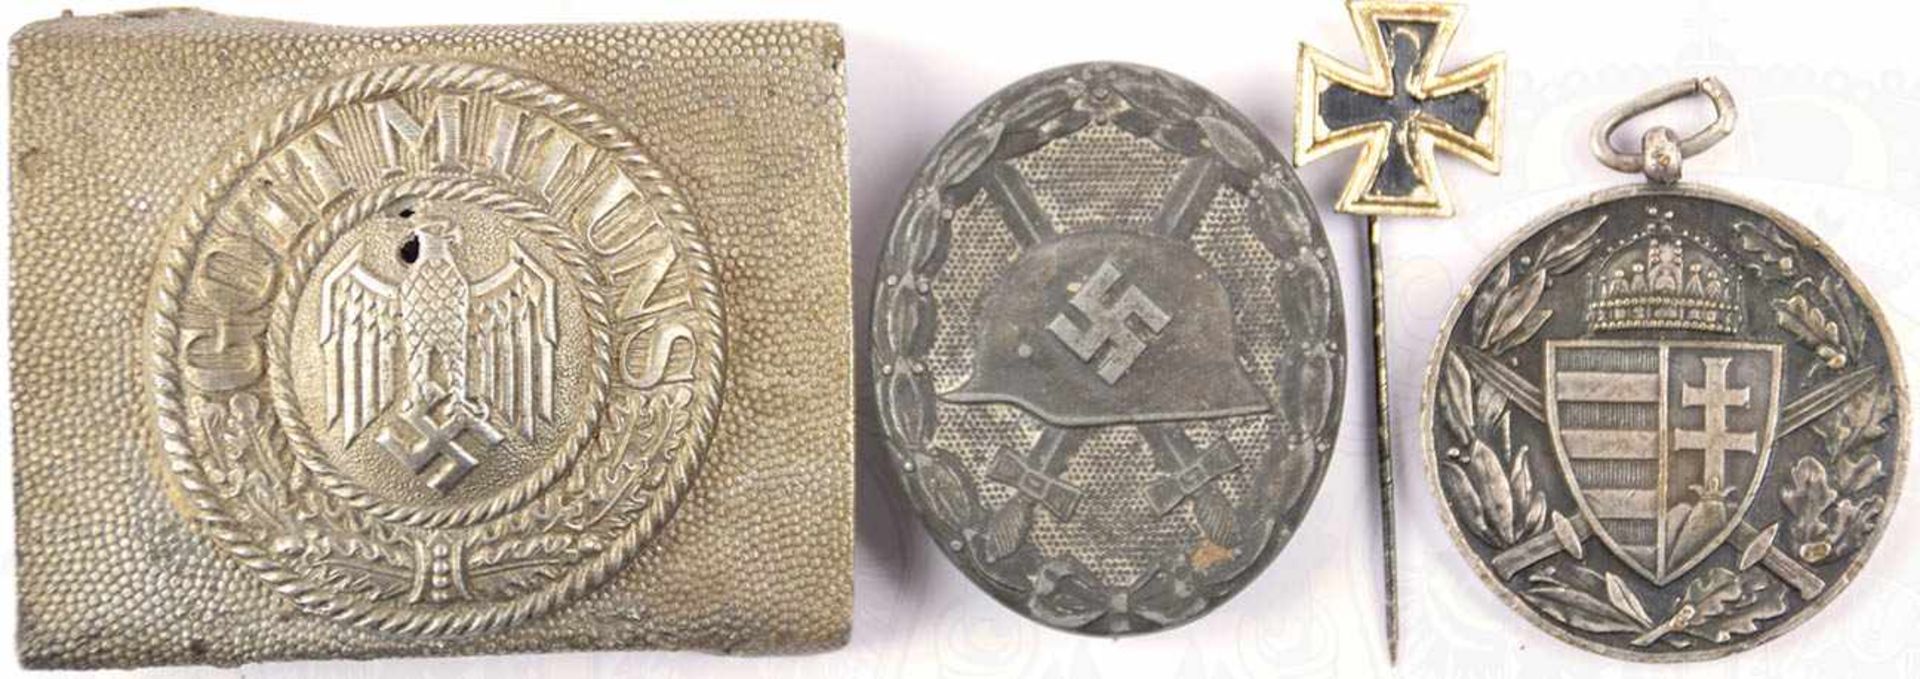 KONVOLUT EHRENZEICHEN: Verwundeten-Abz. in Silber 1941-1945, 2. Form, Feinzink, Verslb. meist